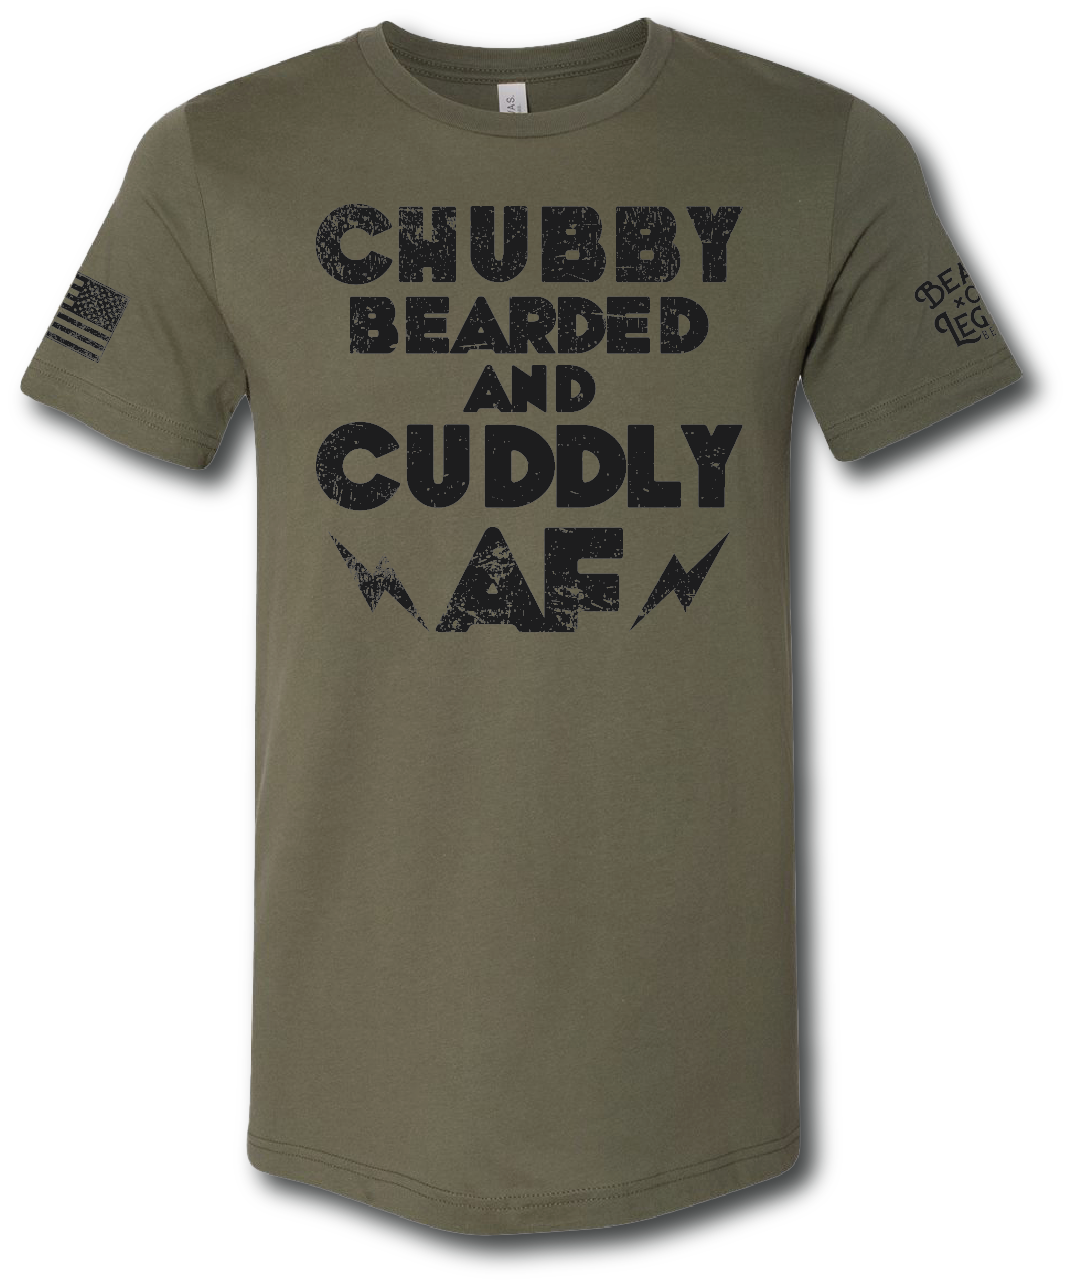 Chubby Bearded Cuddly Short Sleeve T-shirt